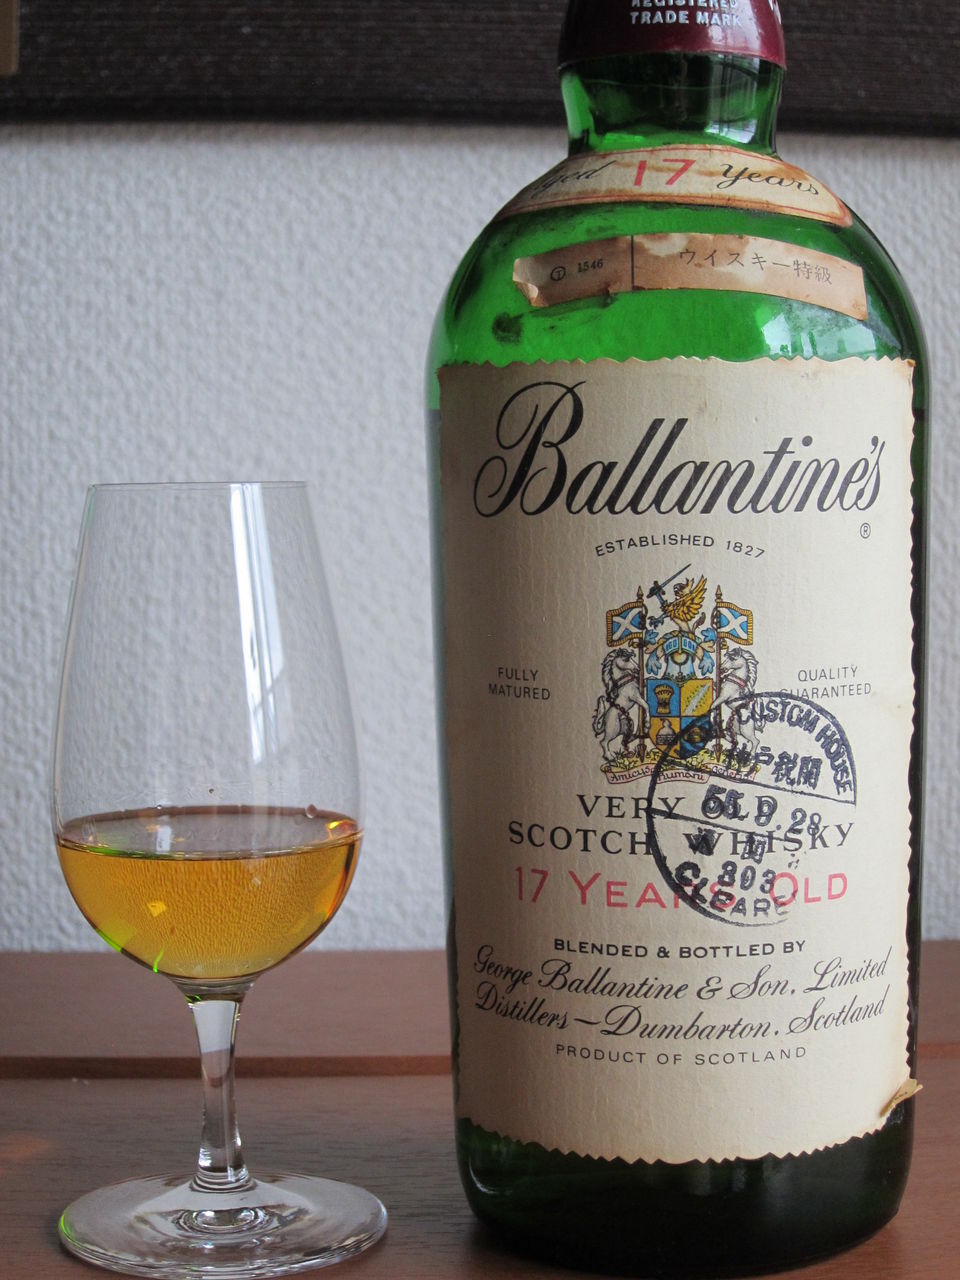 バランタイン 17年 旧ボトル old scotch ウイスキー